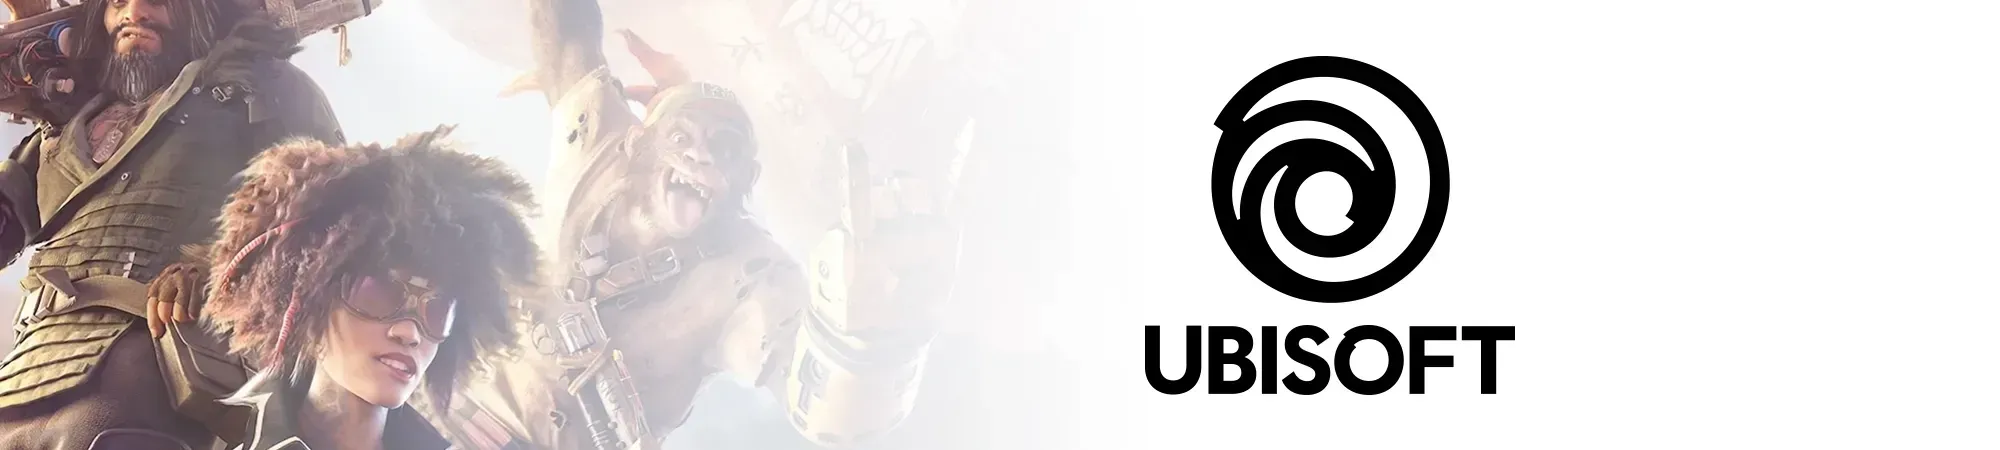 Ubisoft Montpellier Banner